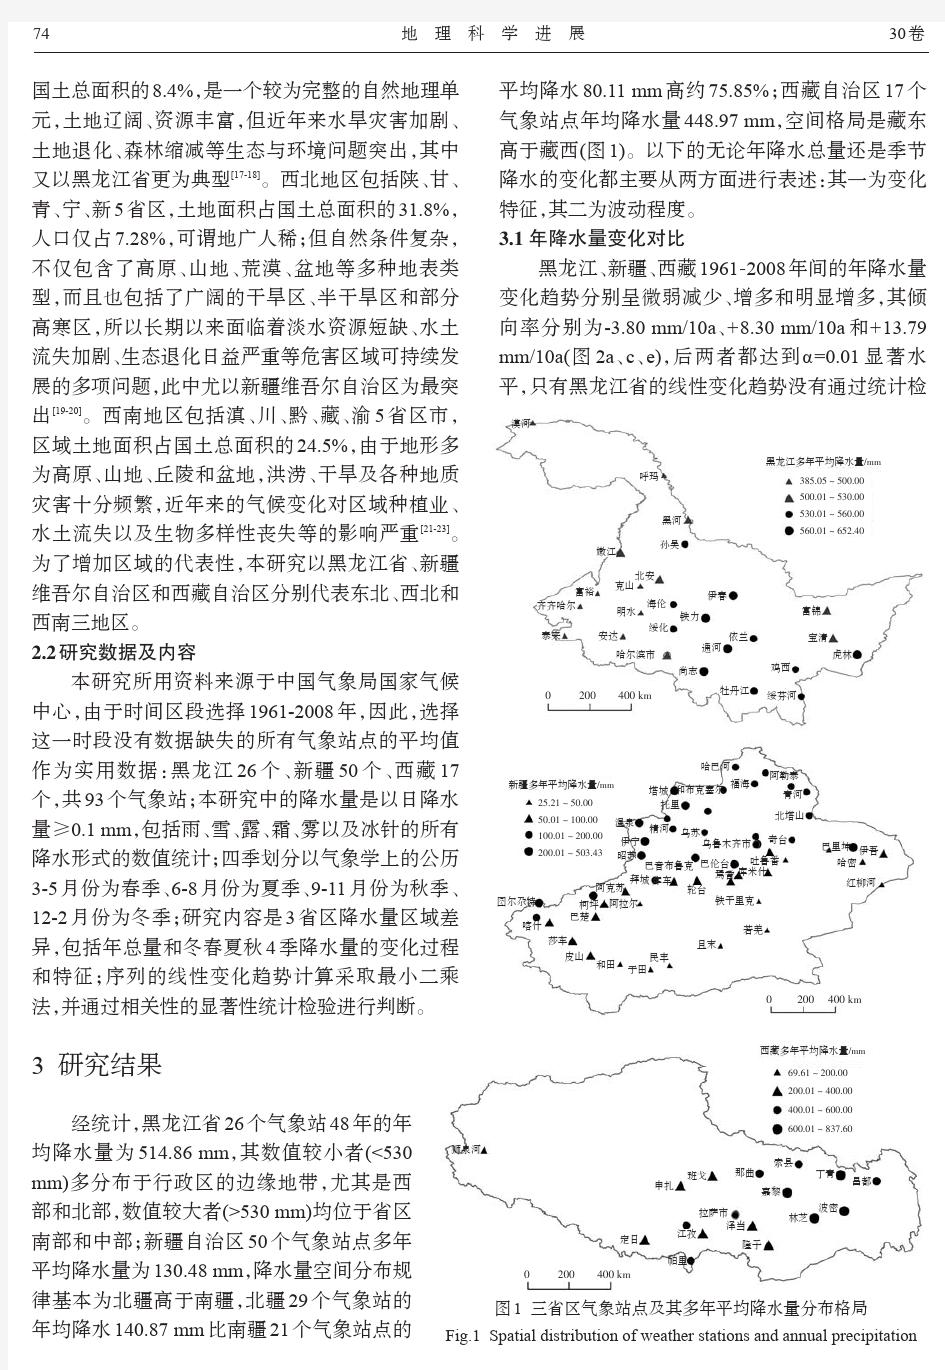 中国气候变化敏感区降水量区域对比